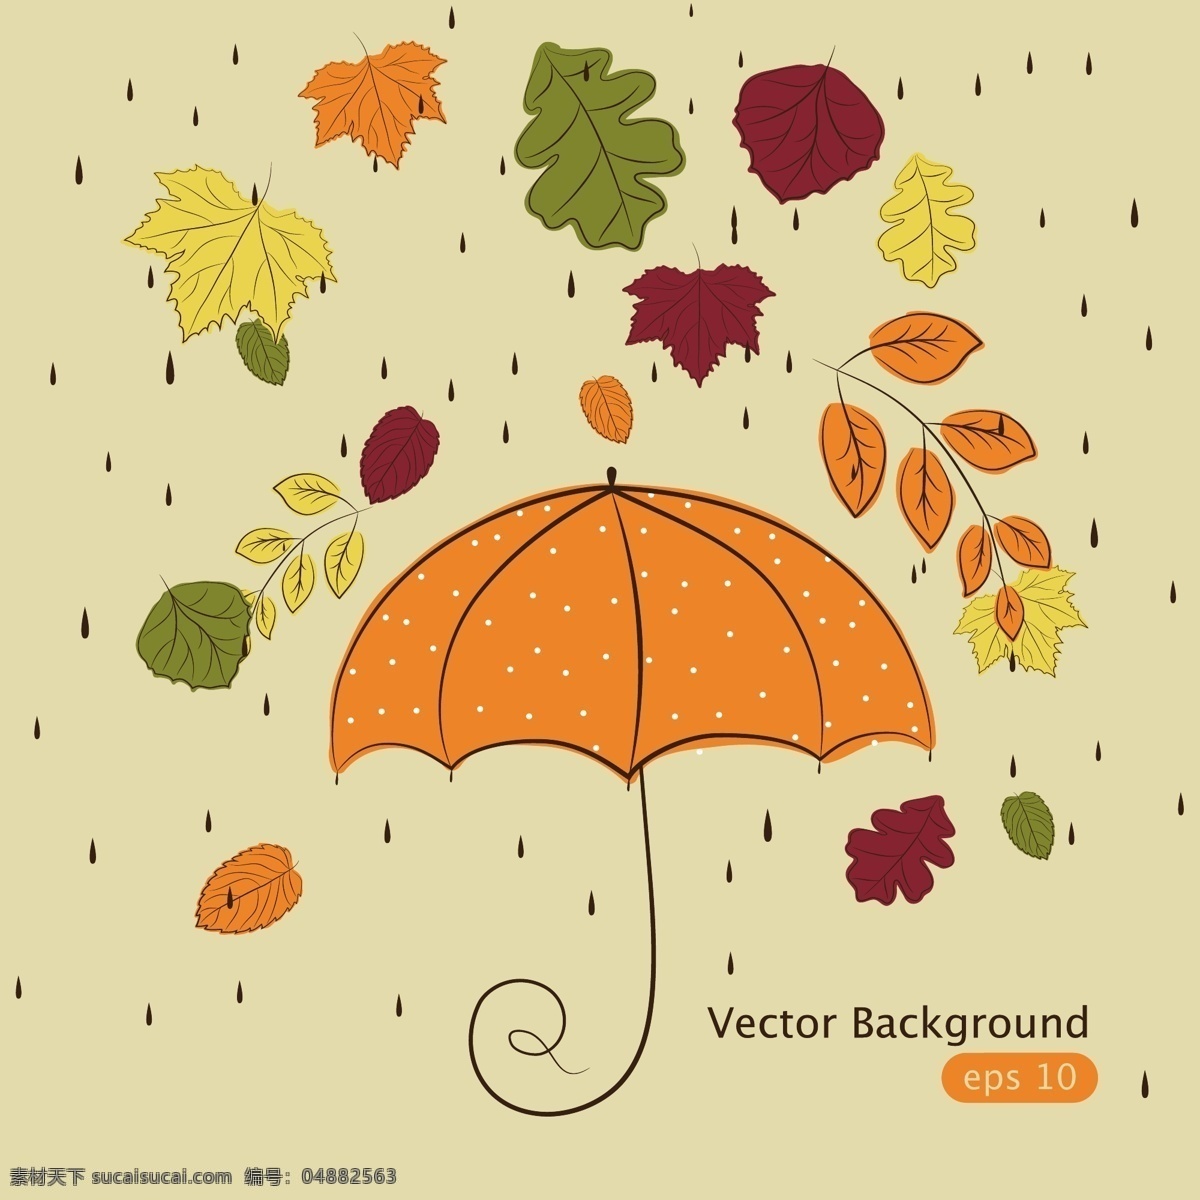 卡通 雨伞 矢量 彩色 落叶 矢量素材 设计素材